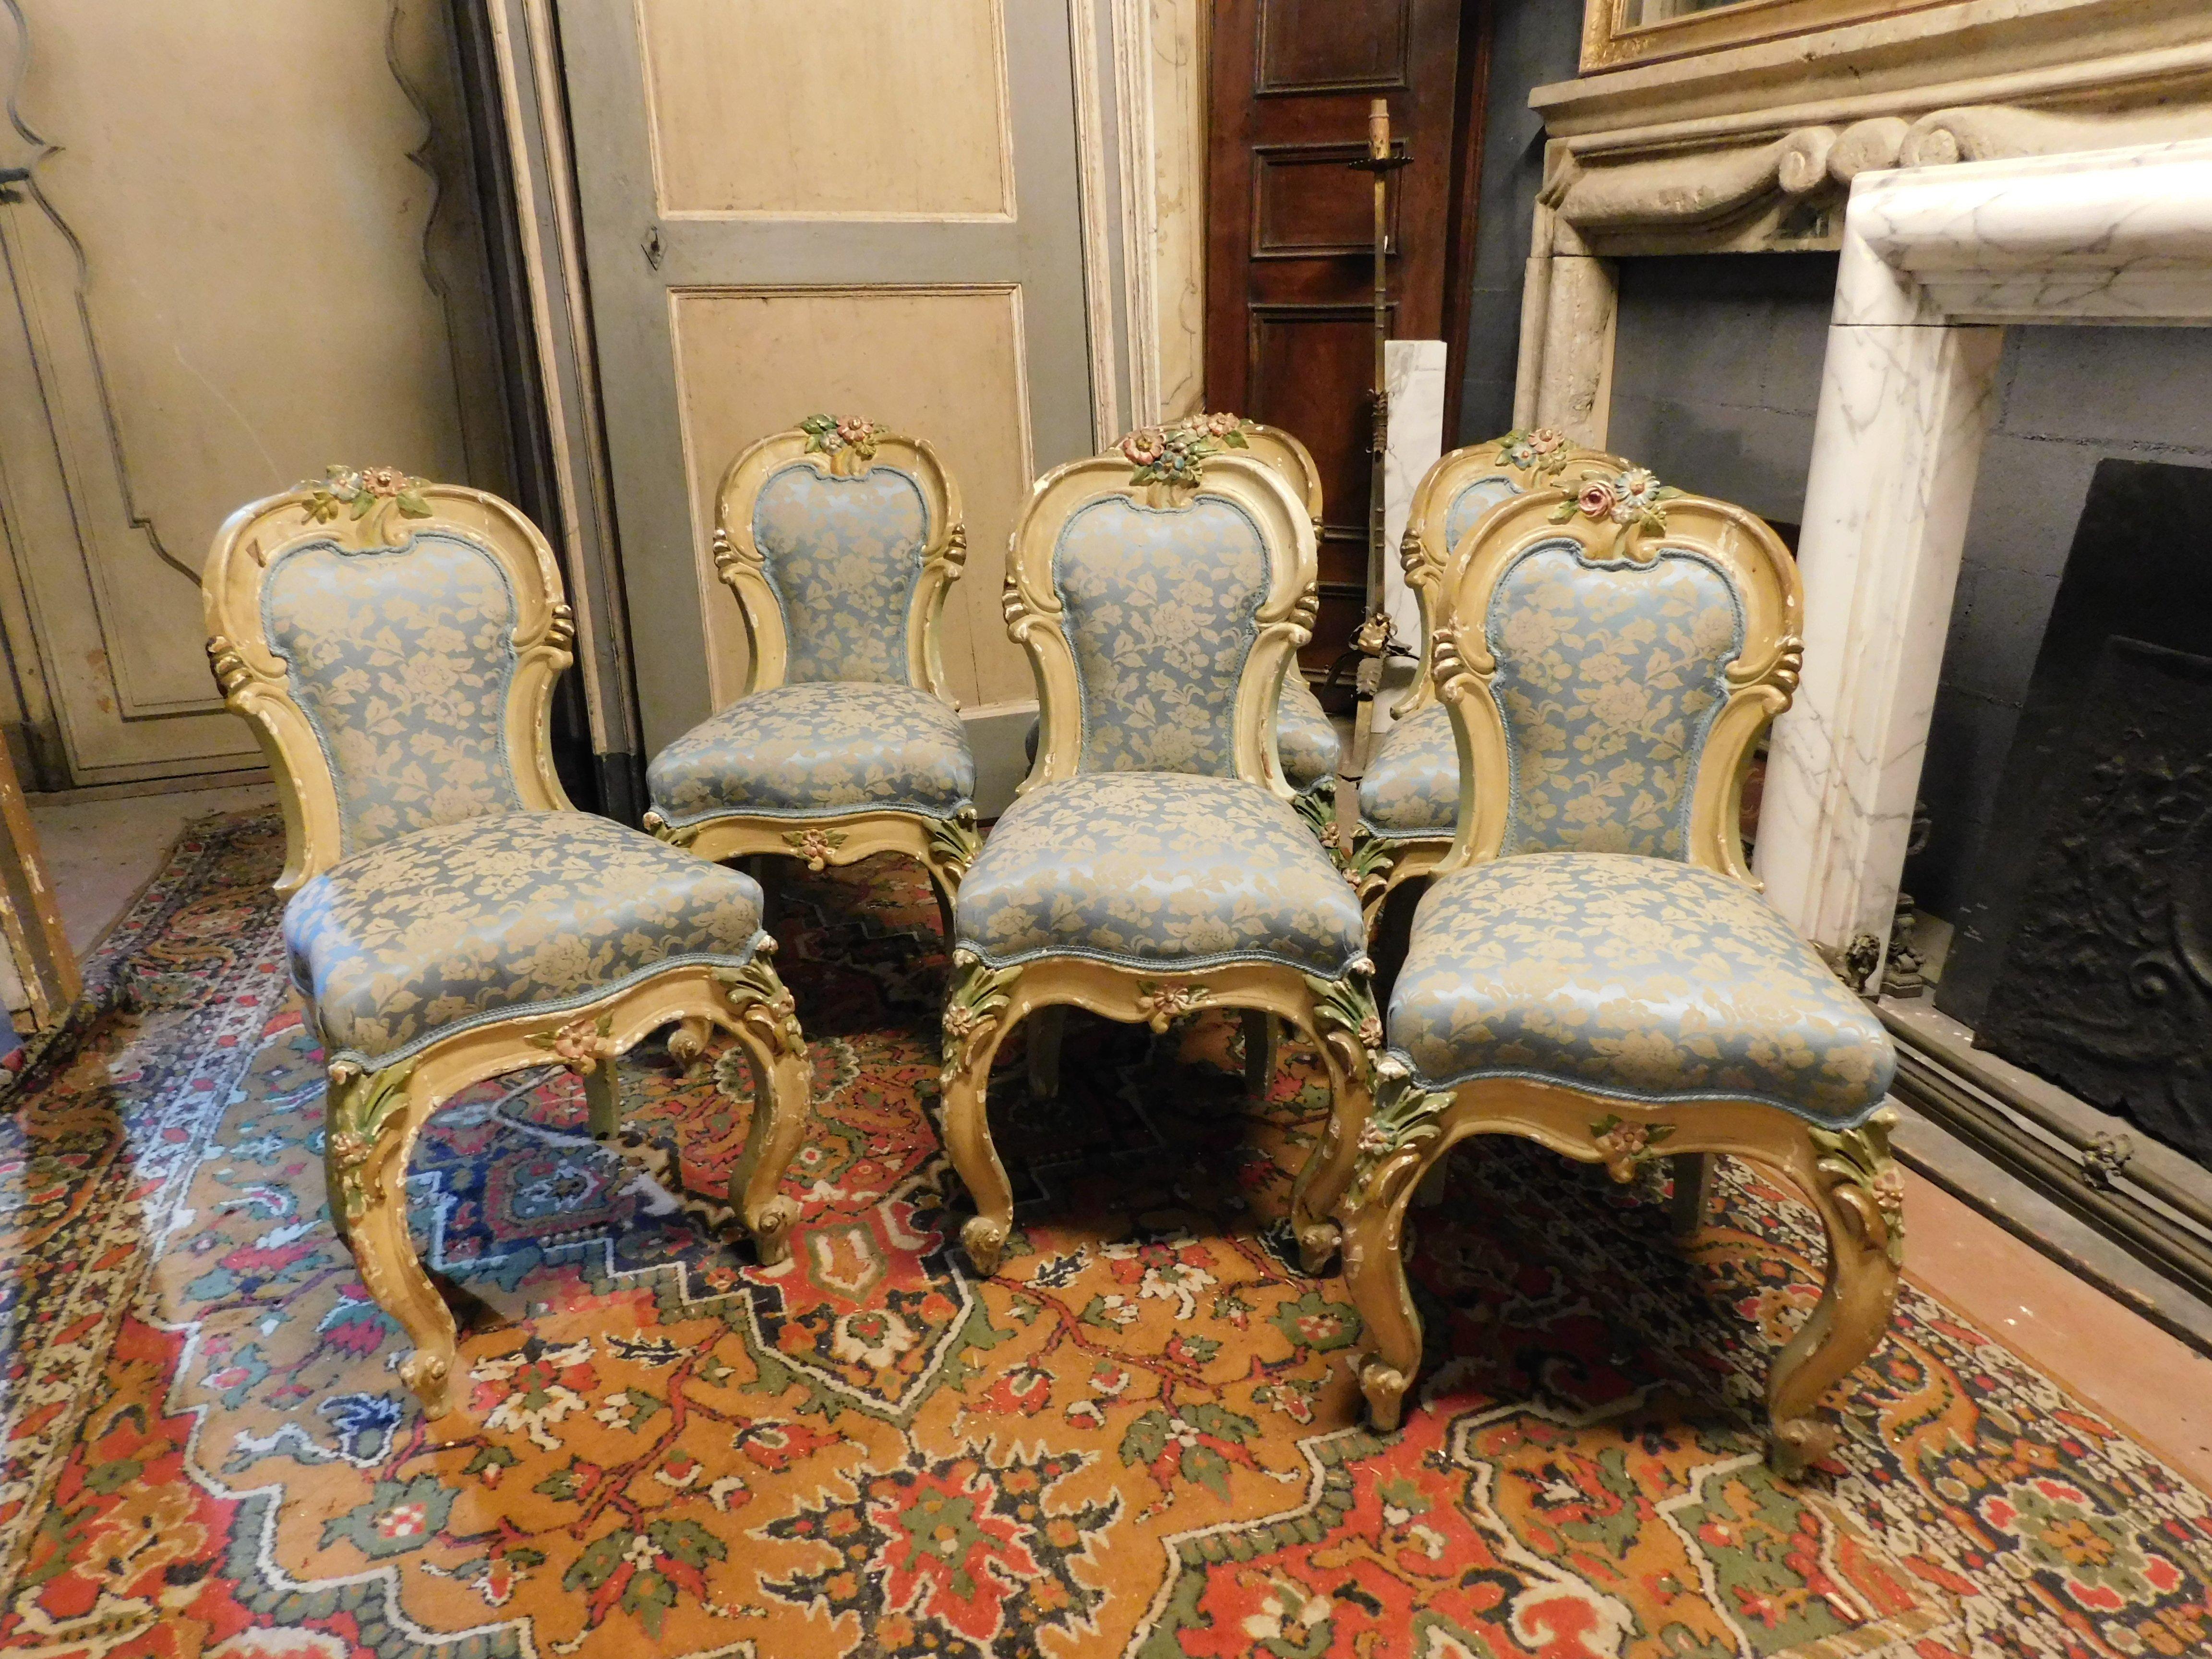 Ensemble complet de salon Liberty d'époque : 6 chaises, 2 fauteuils, 1 canapé, 1 console avec miroir et 2 étagères, tous richement sculptés avec des motifs floraux d'époque et un précieux tissu de brocart original, fabriqué en Italie au milieu des